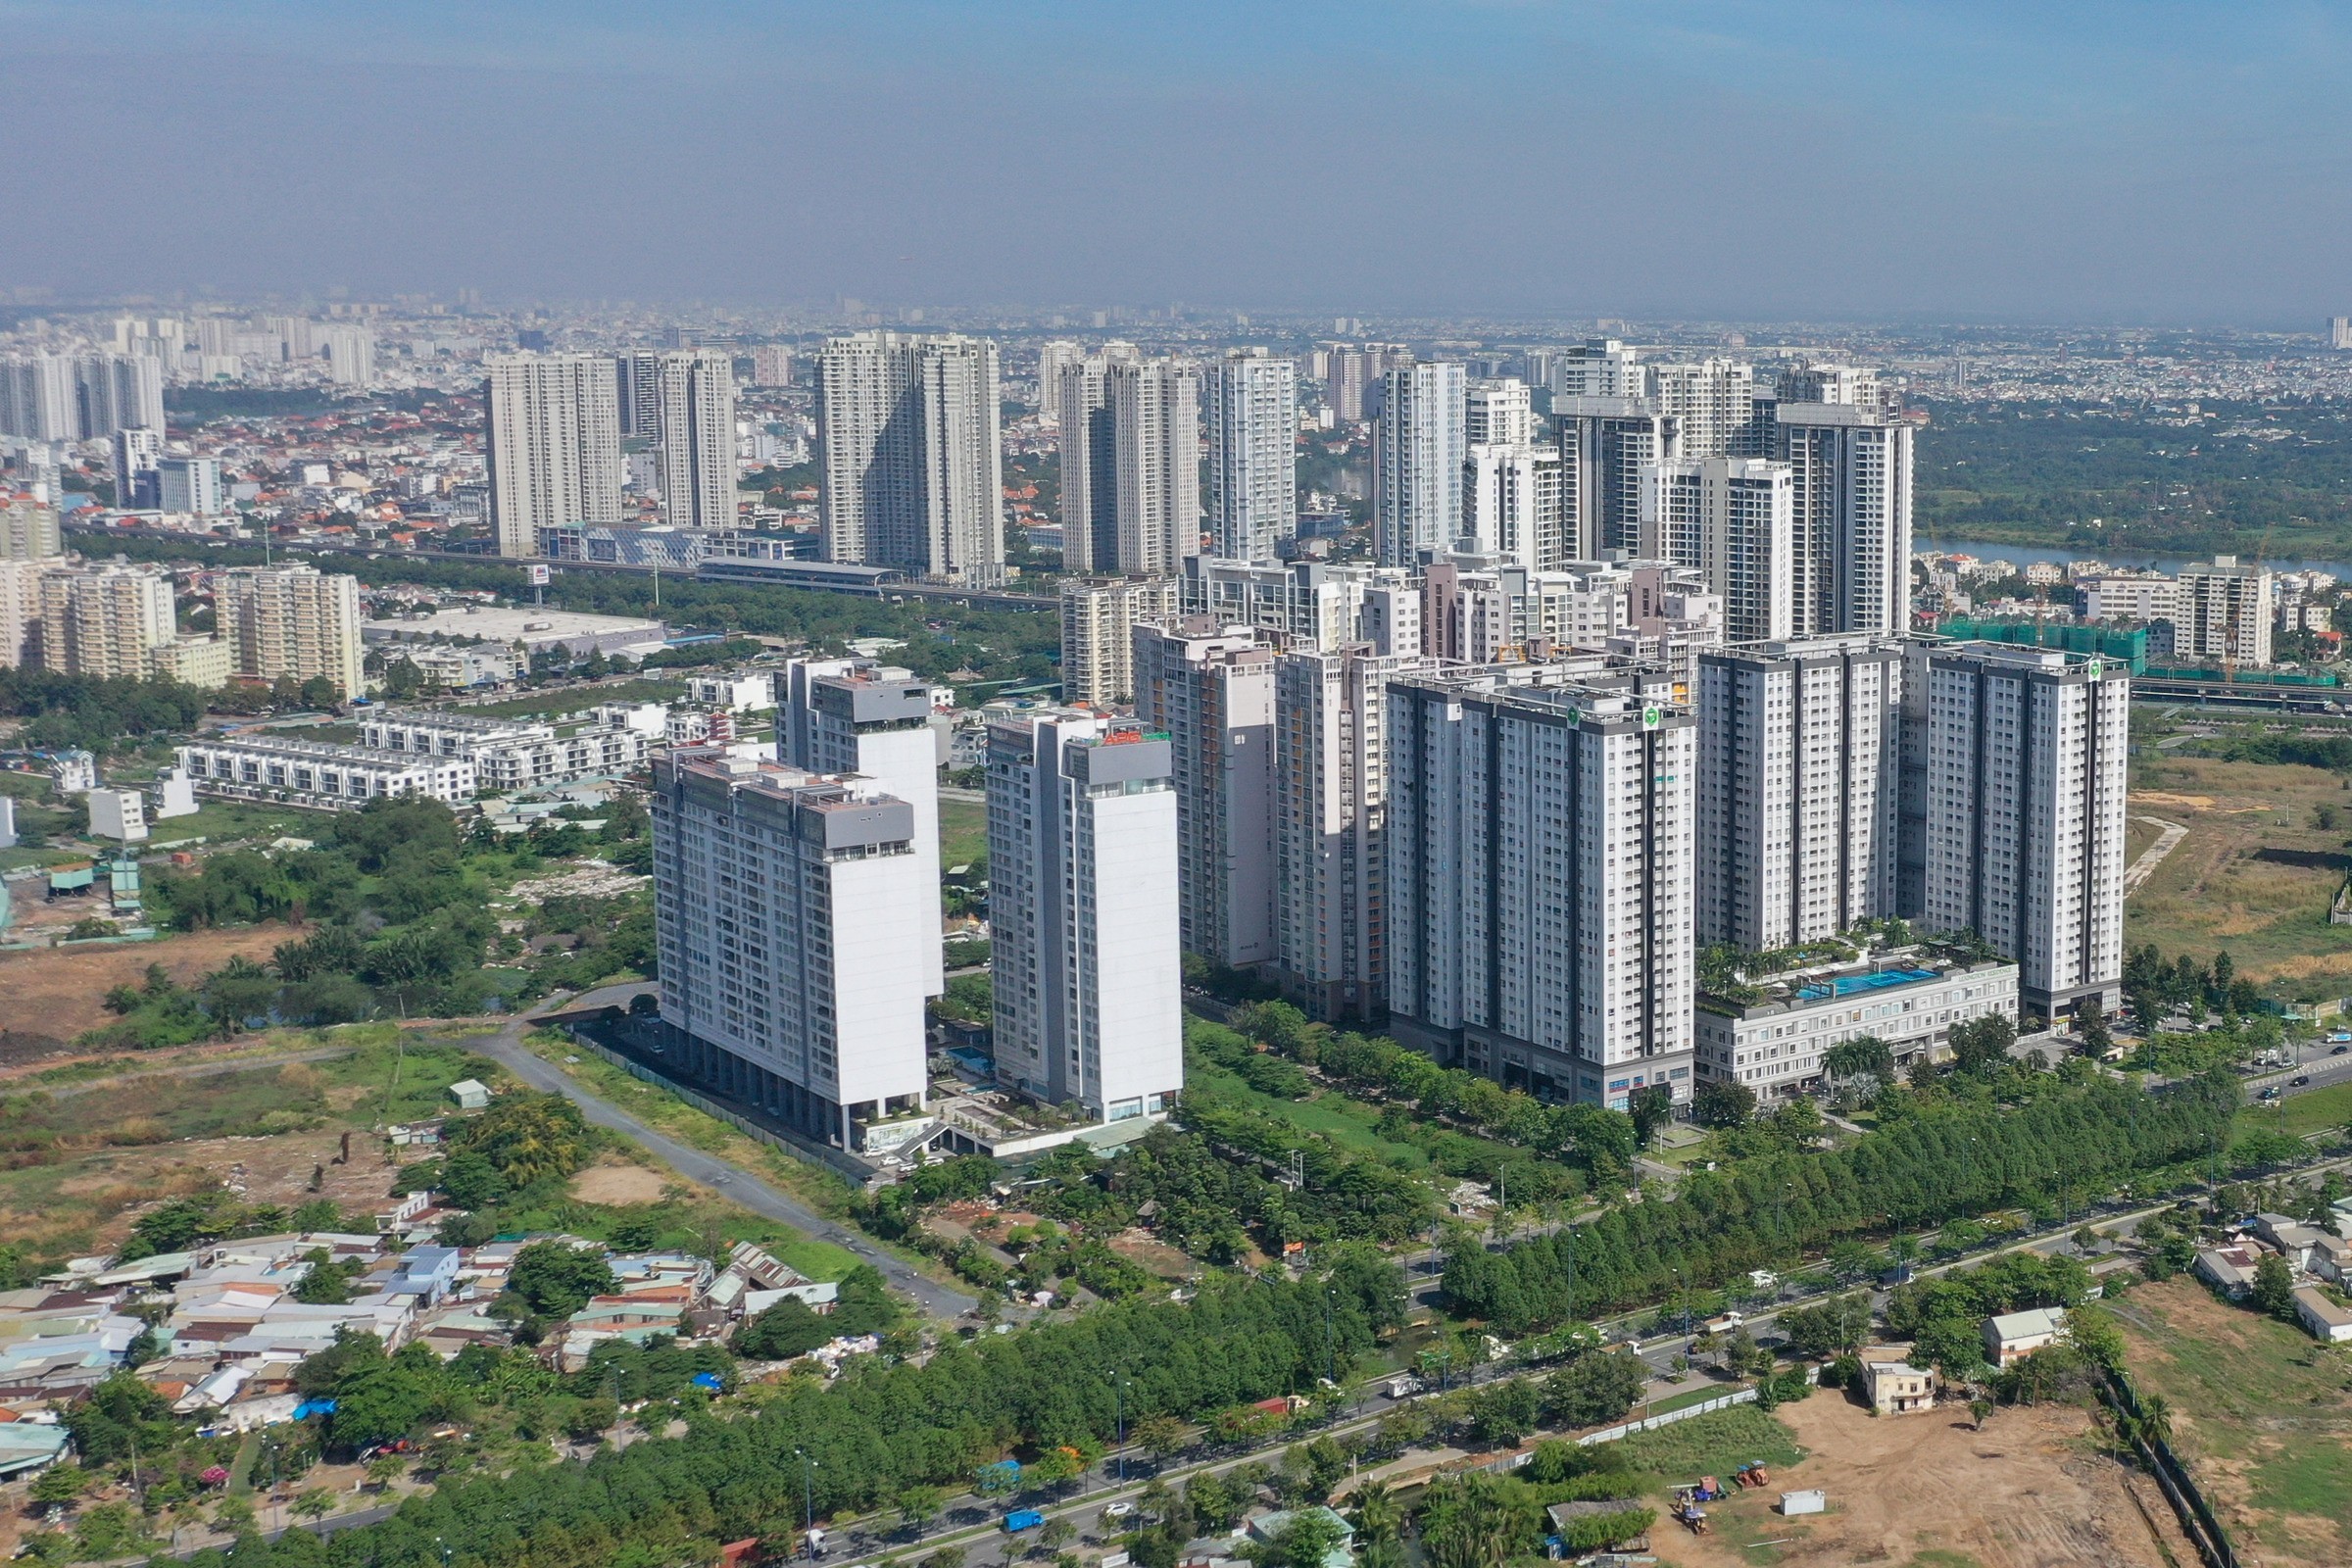 
Nguồn cung và tỷ lệ tiêu thụ căn hộ ở TP Hồ Chí Minh và các vùng phụ cận giảm mạnh trong năm 2022
